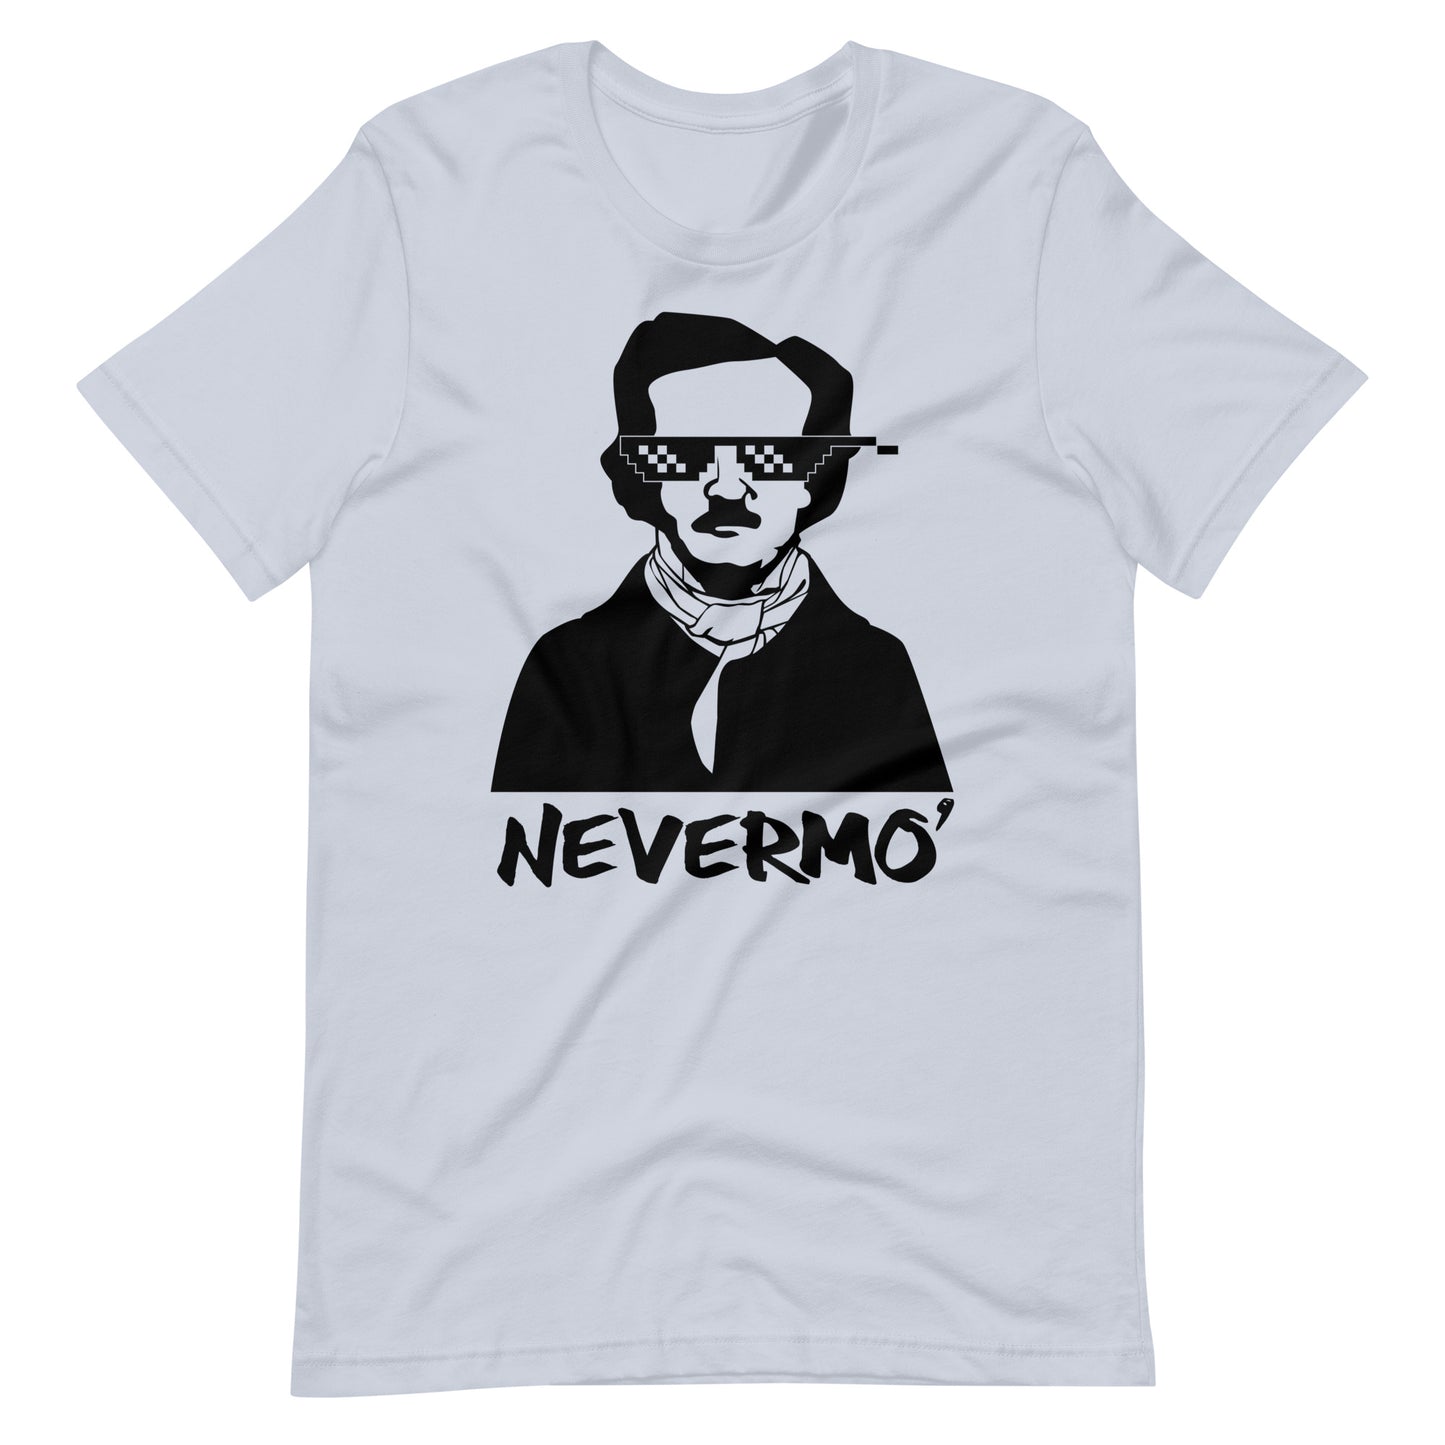 Women's Edgar Allan Poe "Nevermo" t-shirt - Light Blue Front Front